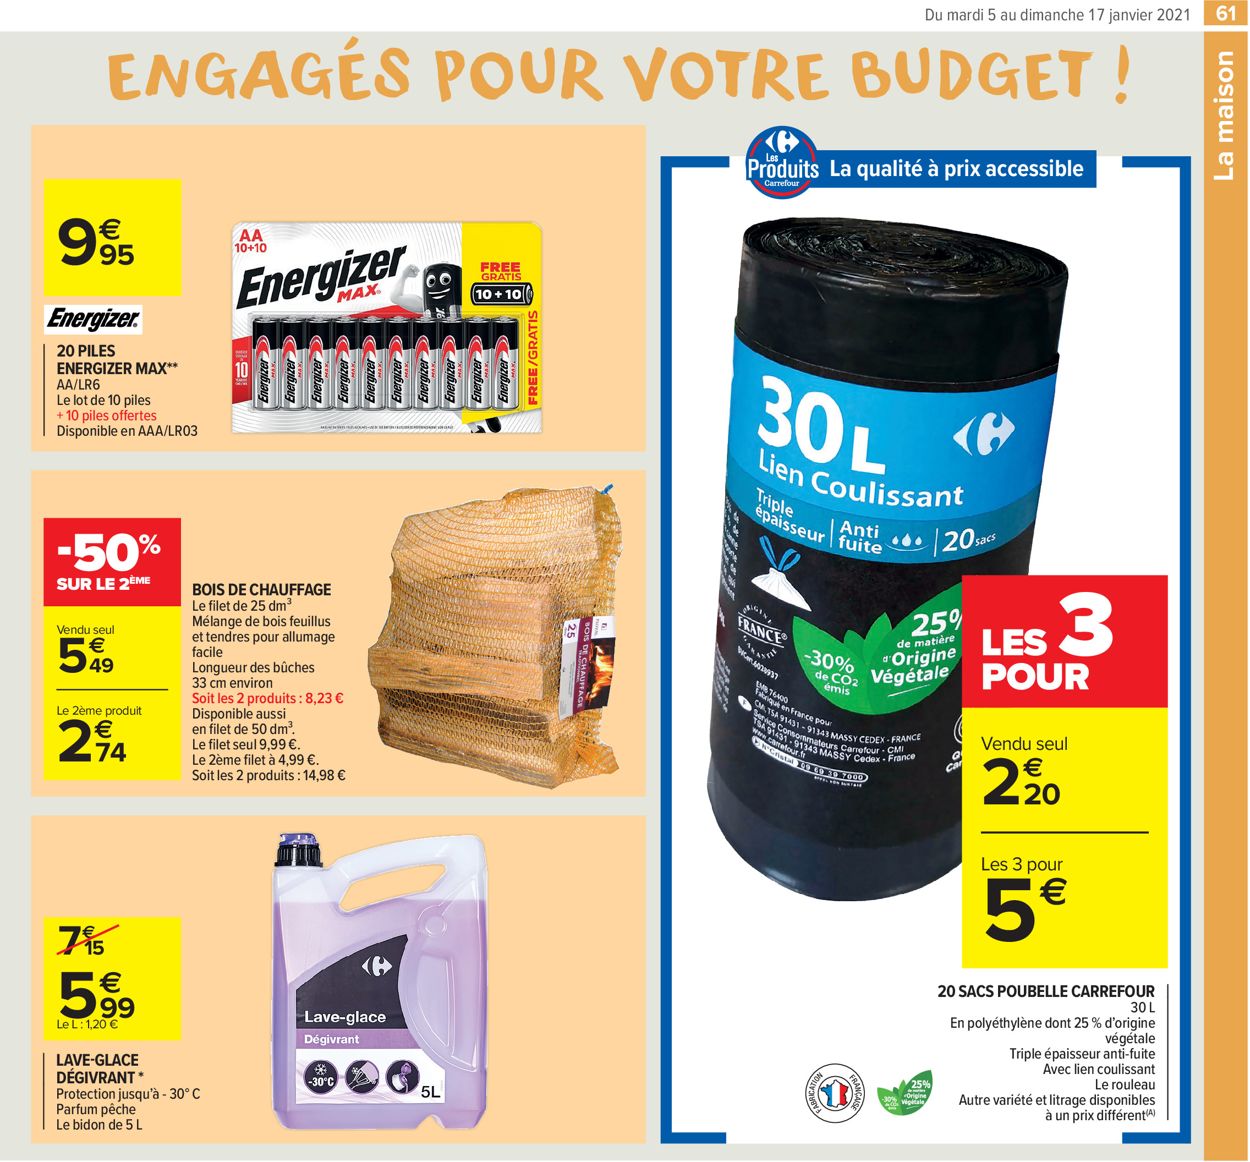 Carrefour Résolument engagés pour votre budget 2021 Catalogue - 05.01-17.01.2021 (Page 61)